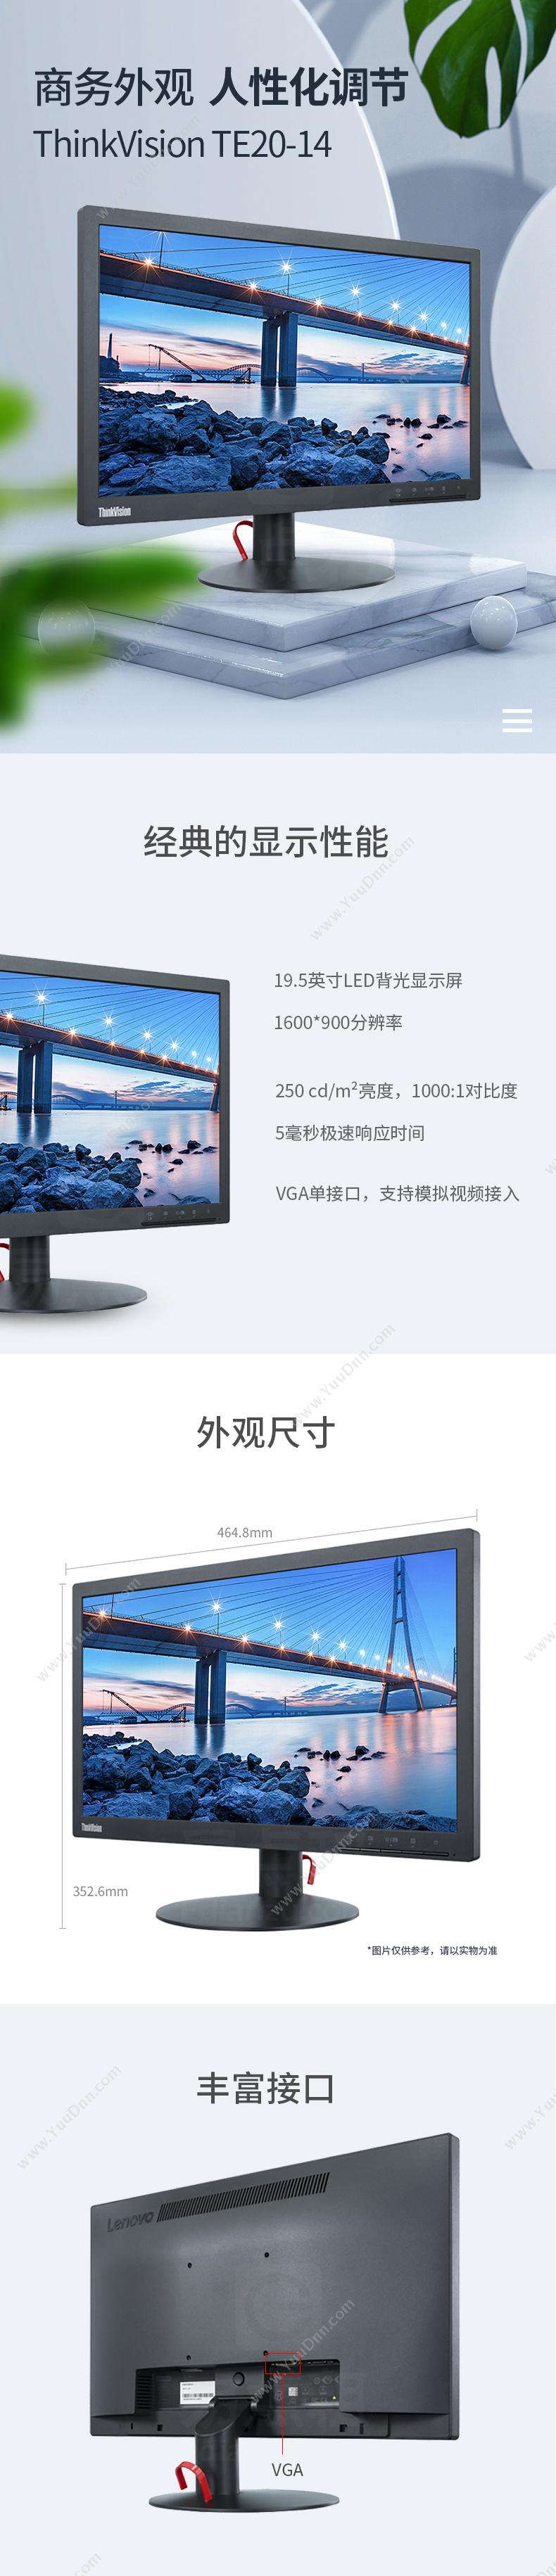 联想 Lenovo ThinkVision TE20-14 19.5英寸宽屏显示器 TN面板 1600*900 VGA接口 VGA线 低蓝光 显示器